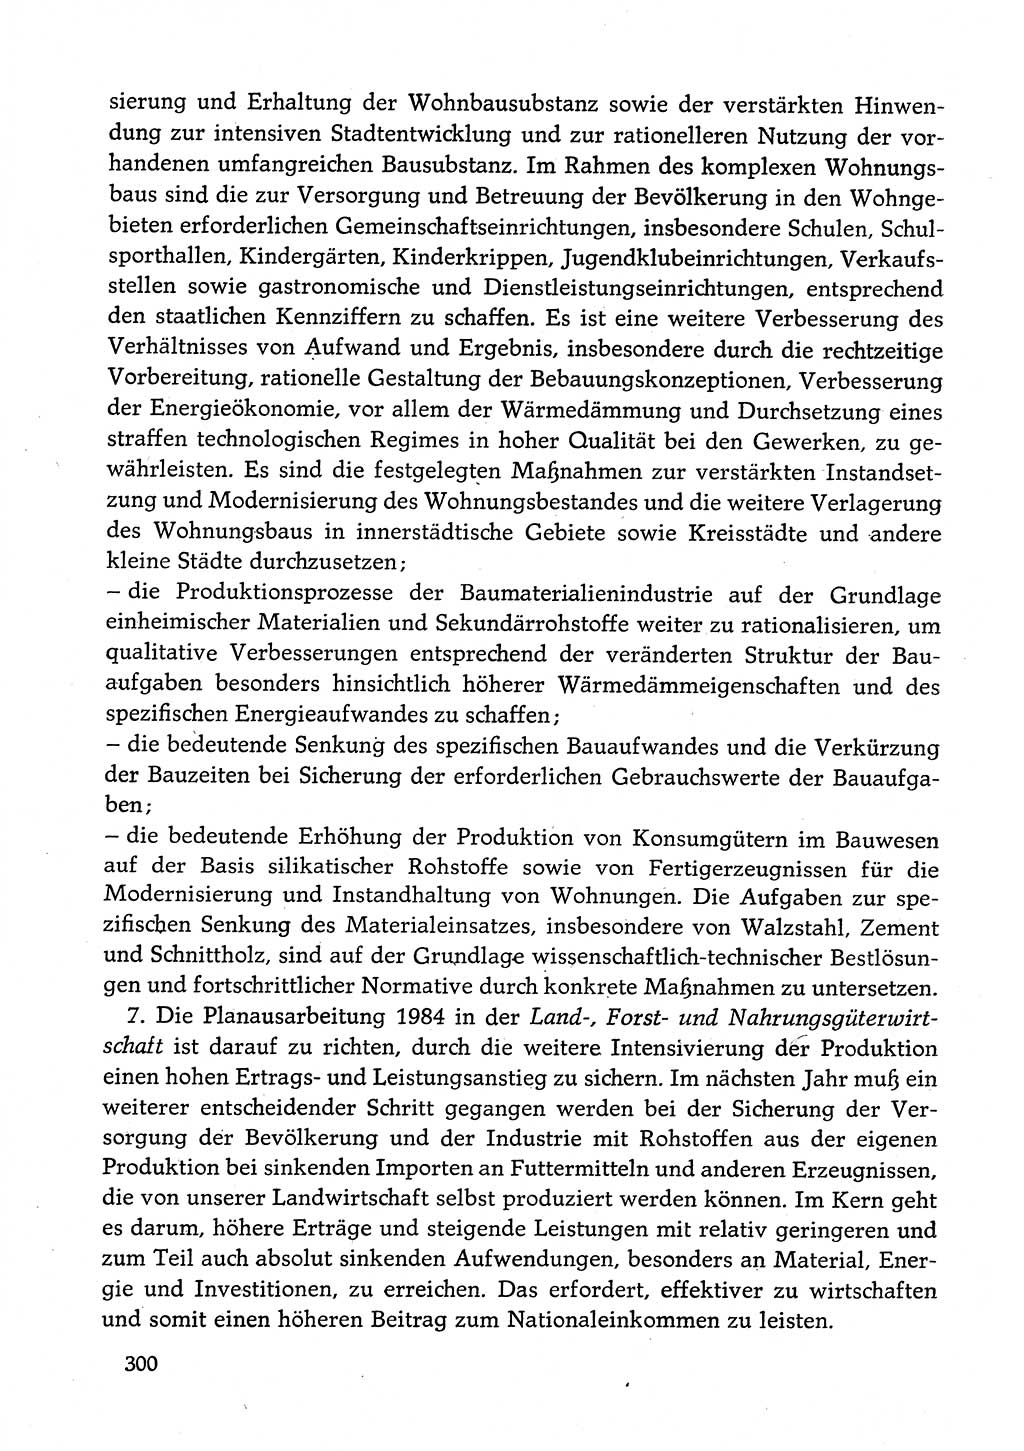 Dokumente der Sozialistischen Einheitspartei Deutschlands (SED) [Deutsche Demokratische Republik (DDR)] 1982-1983, Seite 300 (Dok. SED DDR 1982-1983, S. 300)